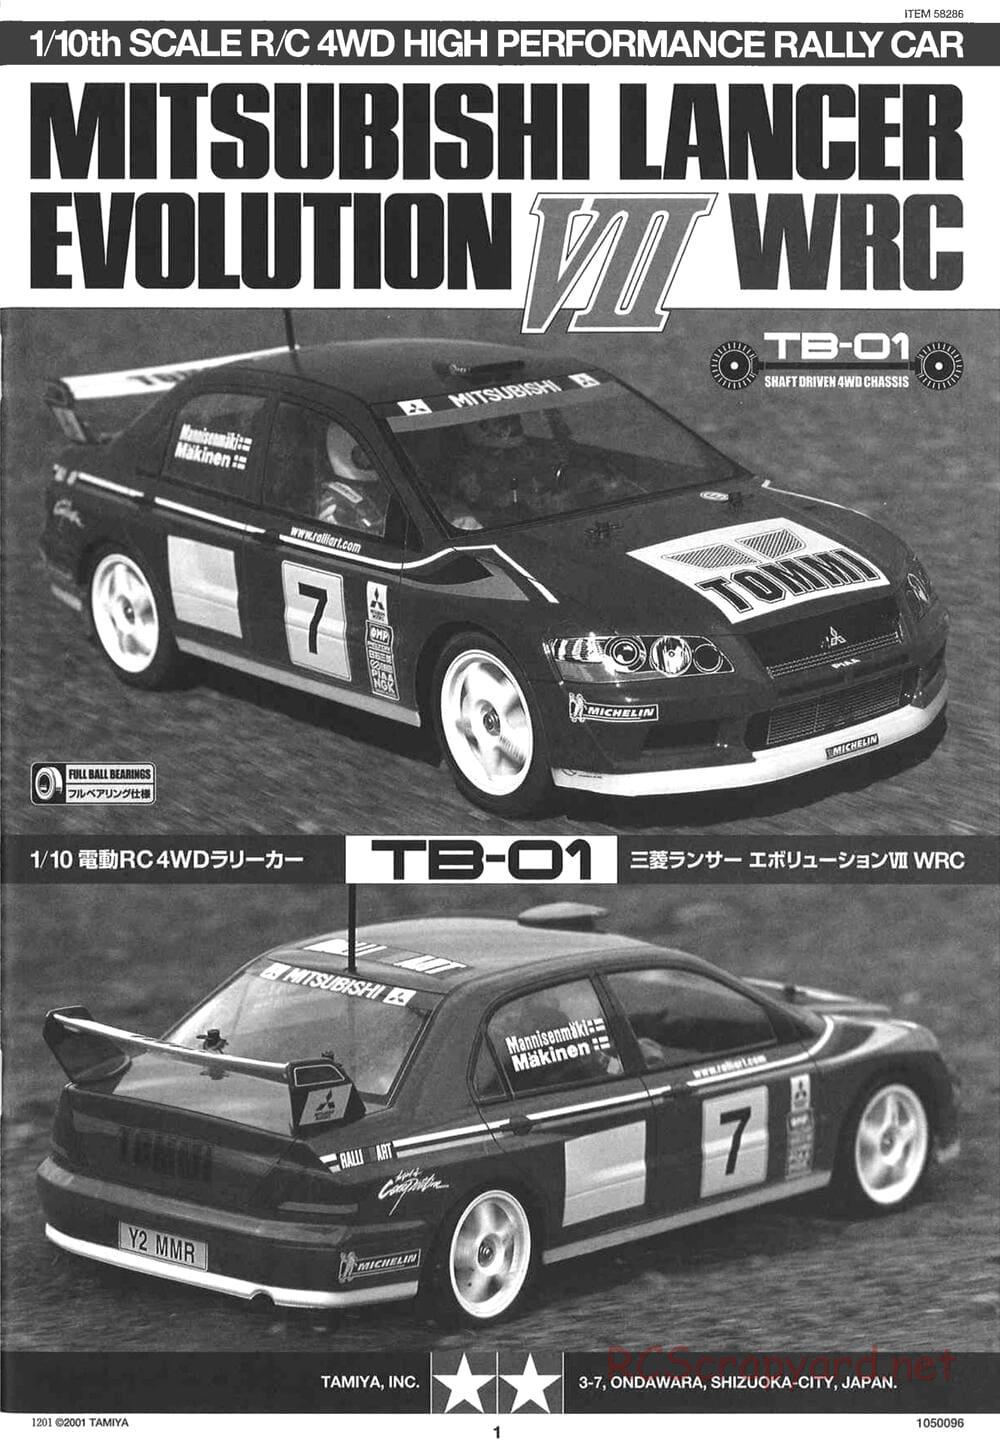 Tamiya - Mitsubishi Lancer Evolution VII WRC - TB-01 Chassis - Manual - Page 1